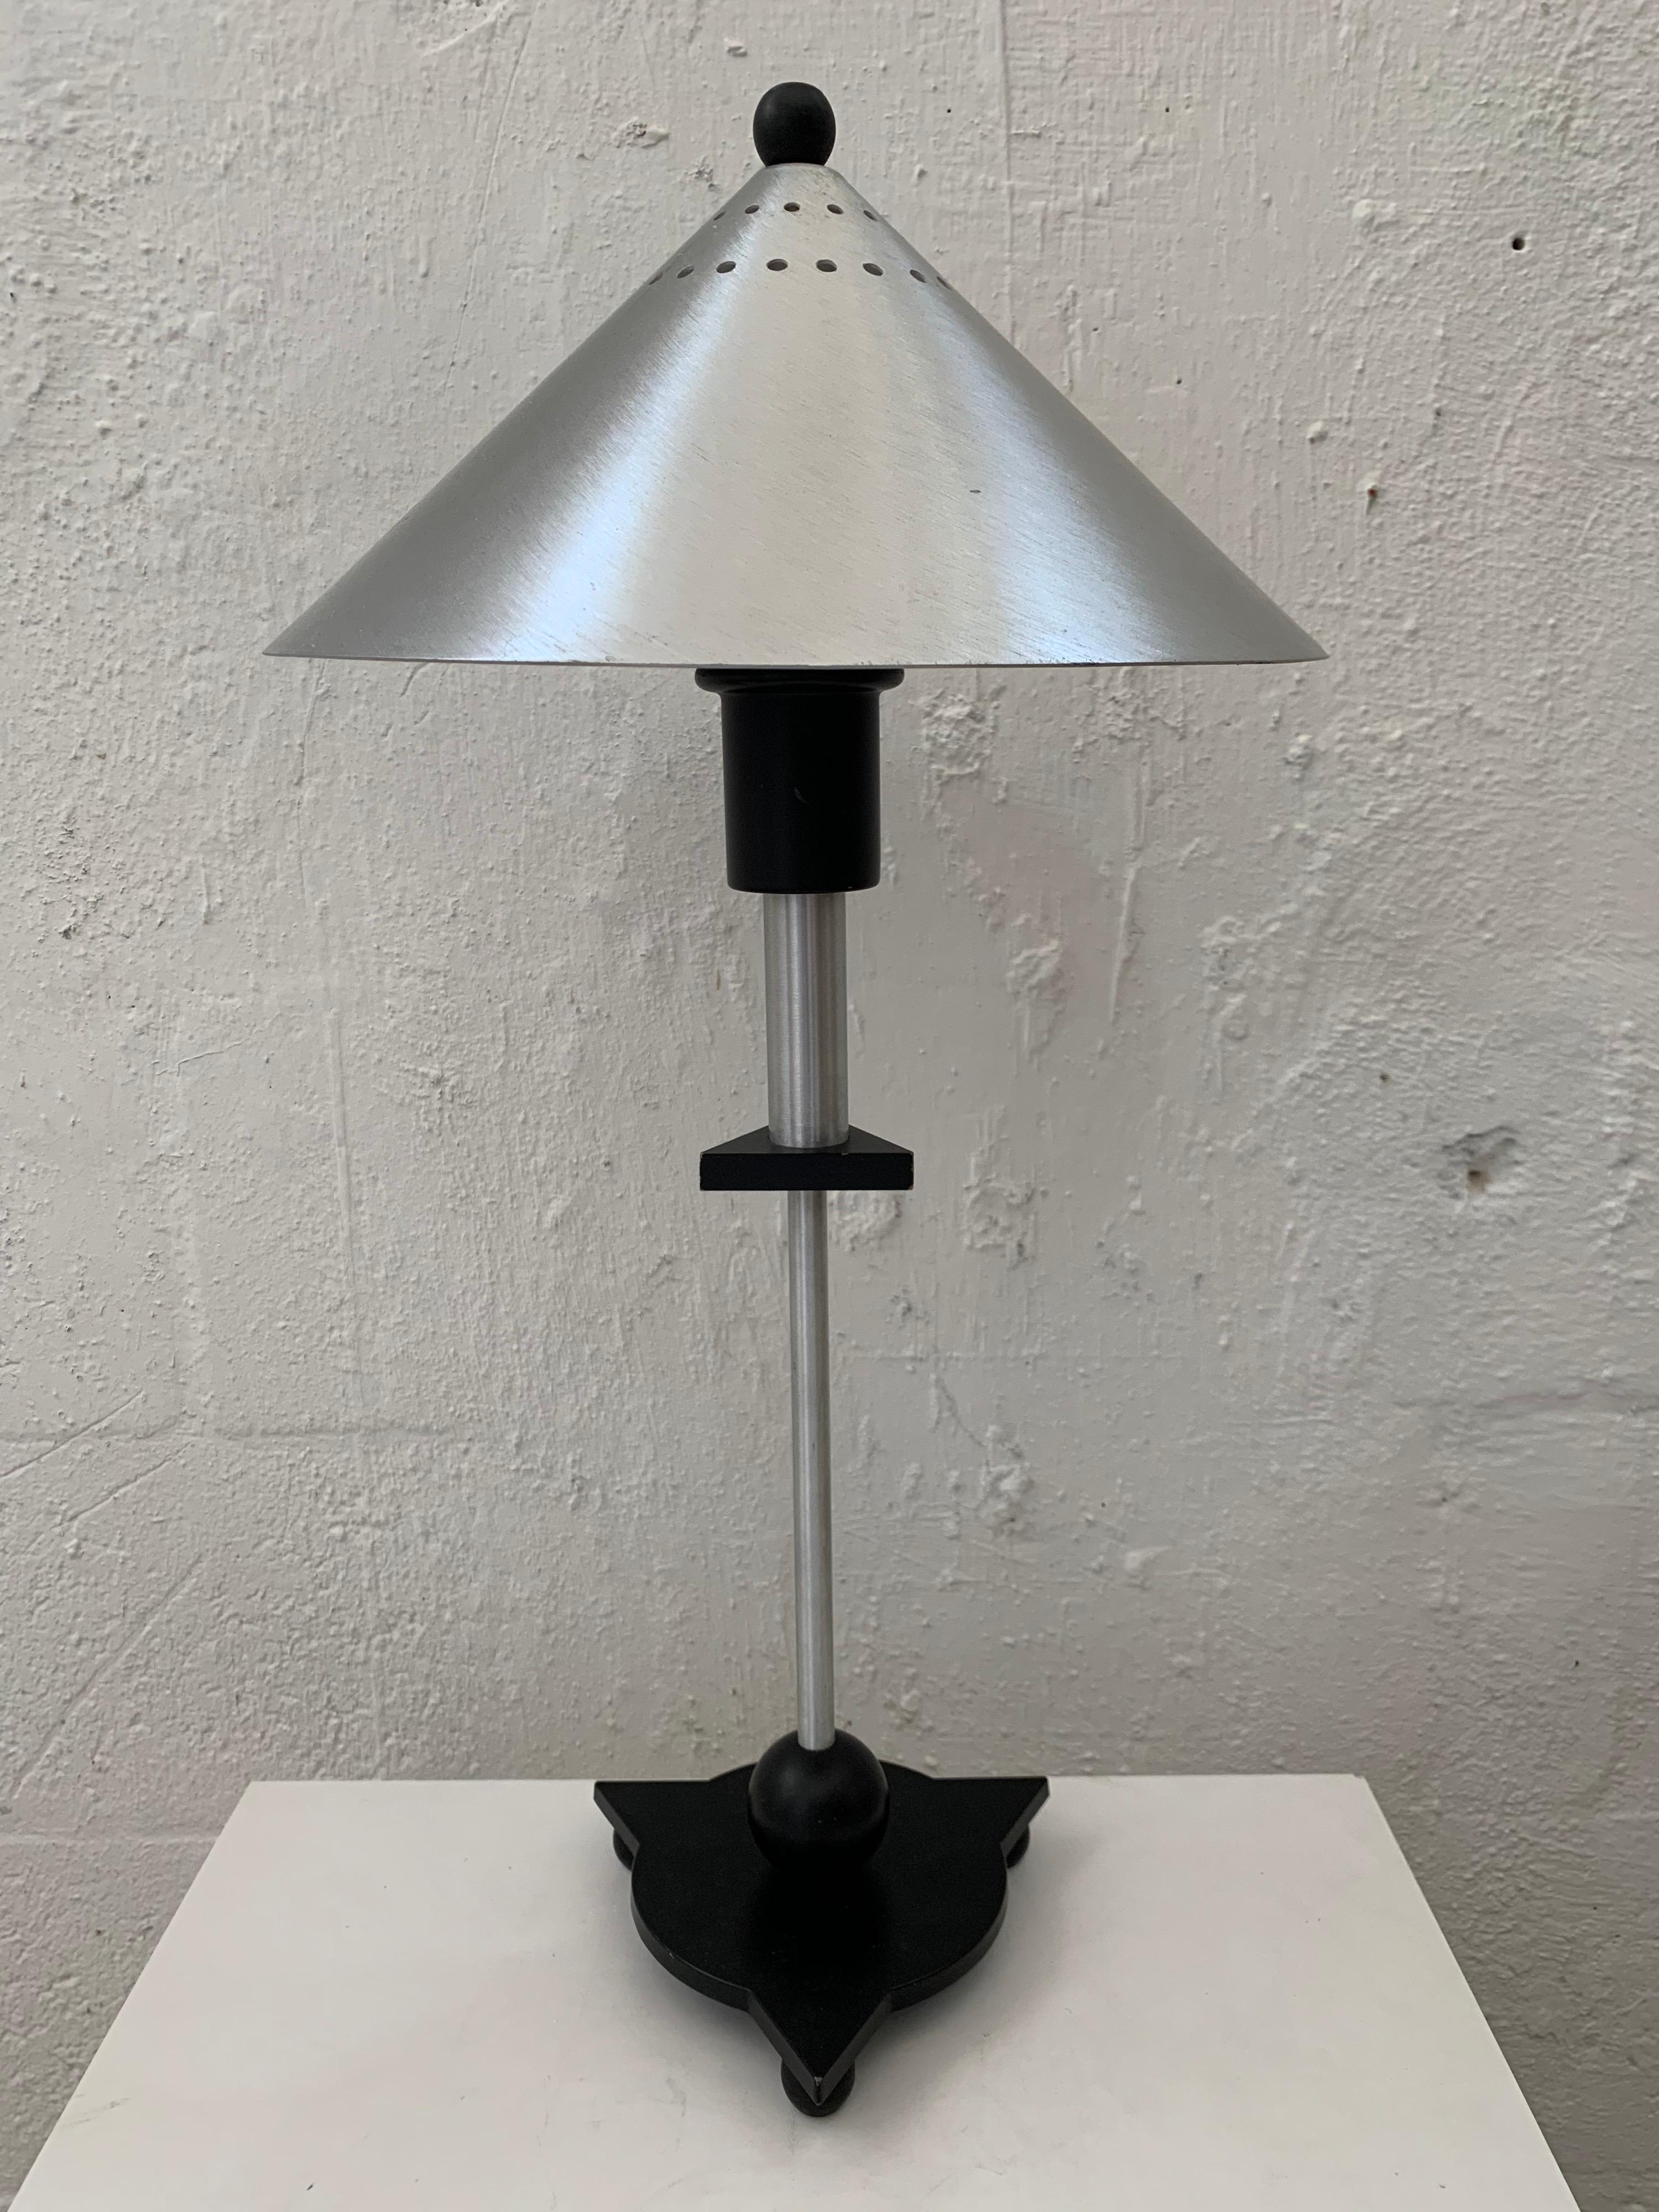 Ensemble de deux lampes de table postmodernes, de style Memphis, réalisées en acier inoxydable et composants géométriques en bois peint en noir, par BE-YANG, années 1980.